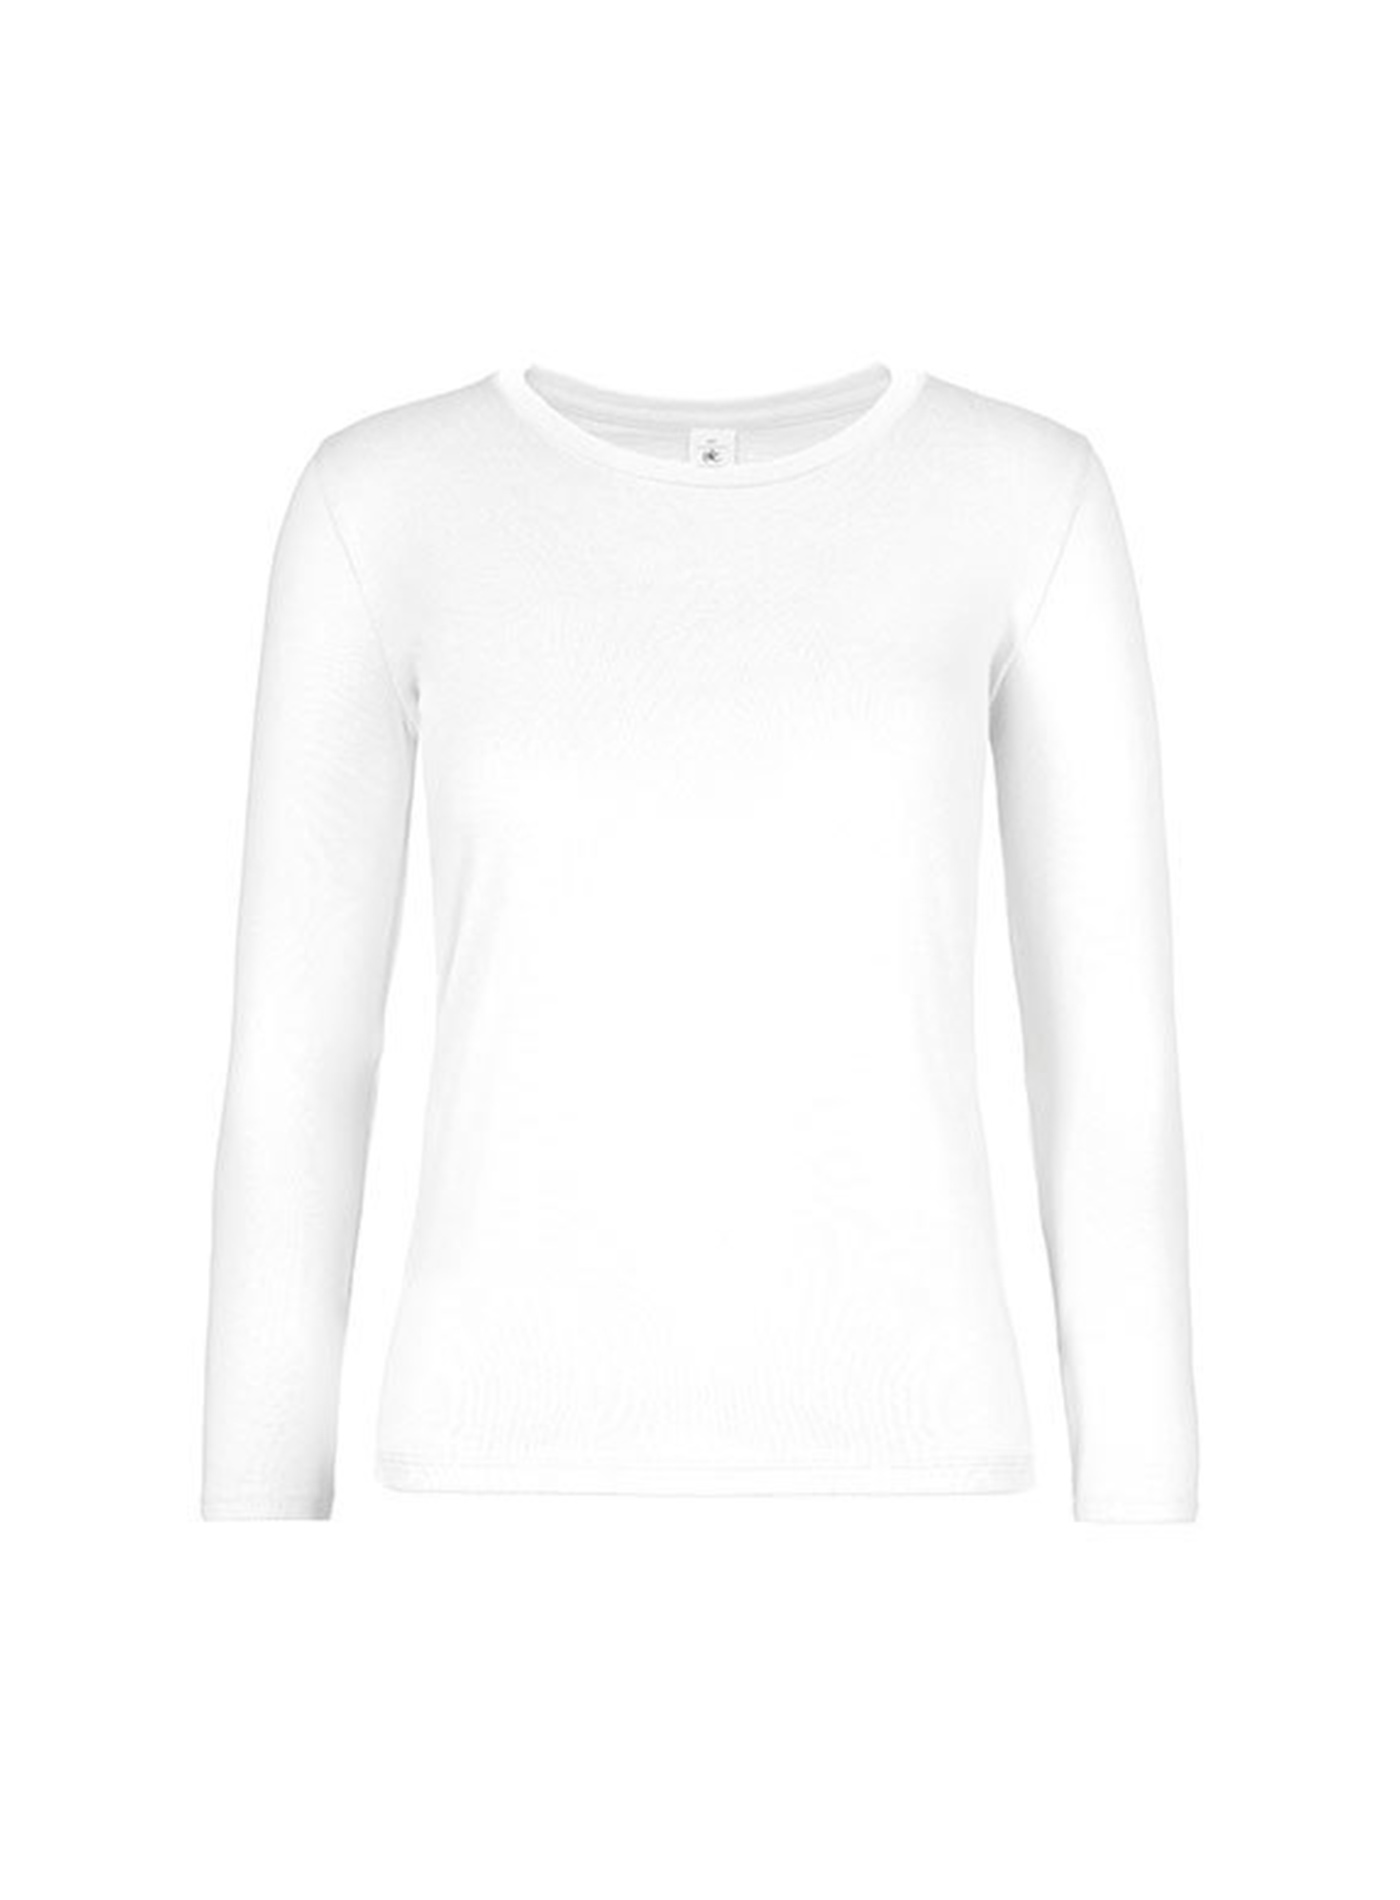 Dámské tričko s dlouhým rukávem B&C Collection - Bílá XXL